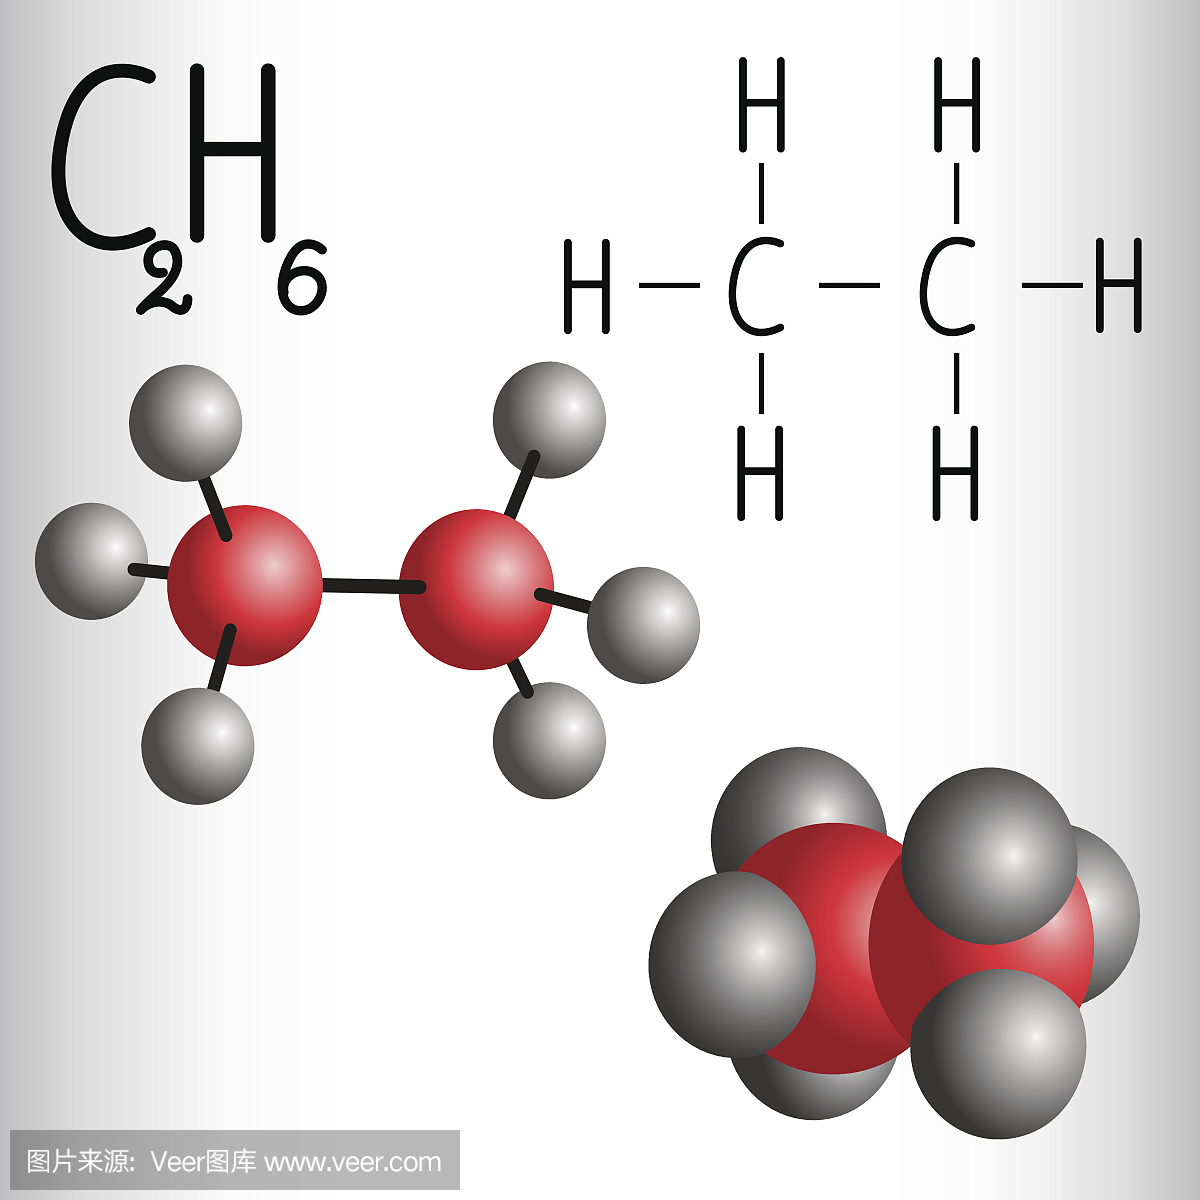 乙烷C2H6的化学式和分子模型